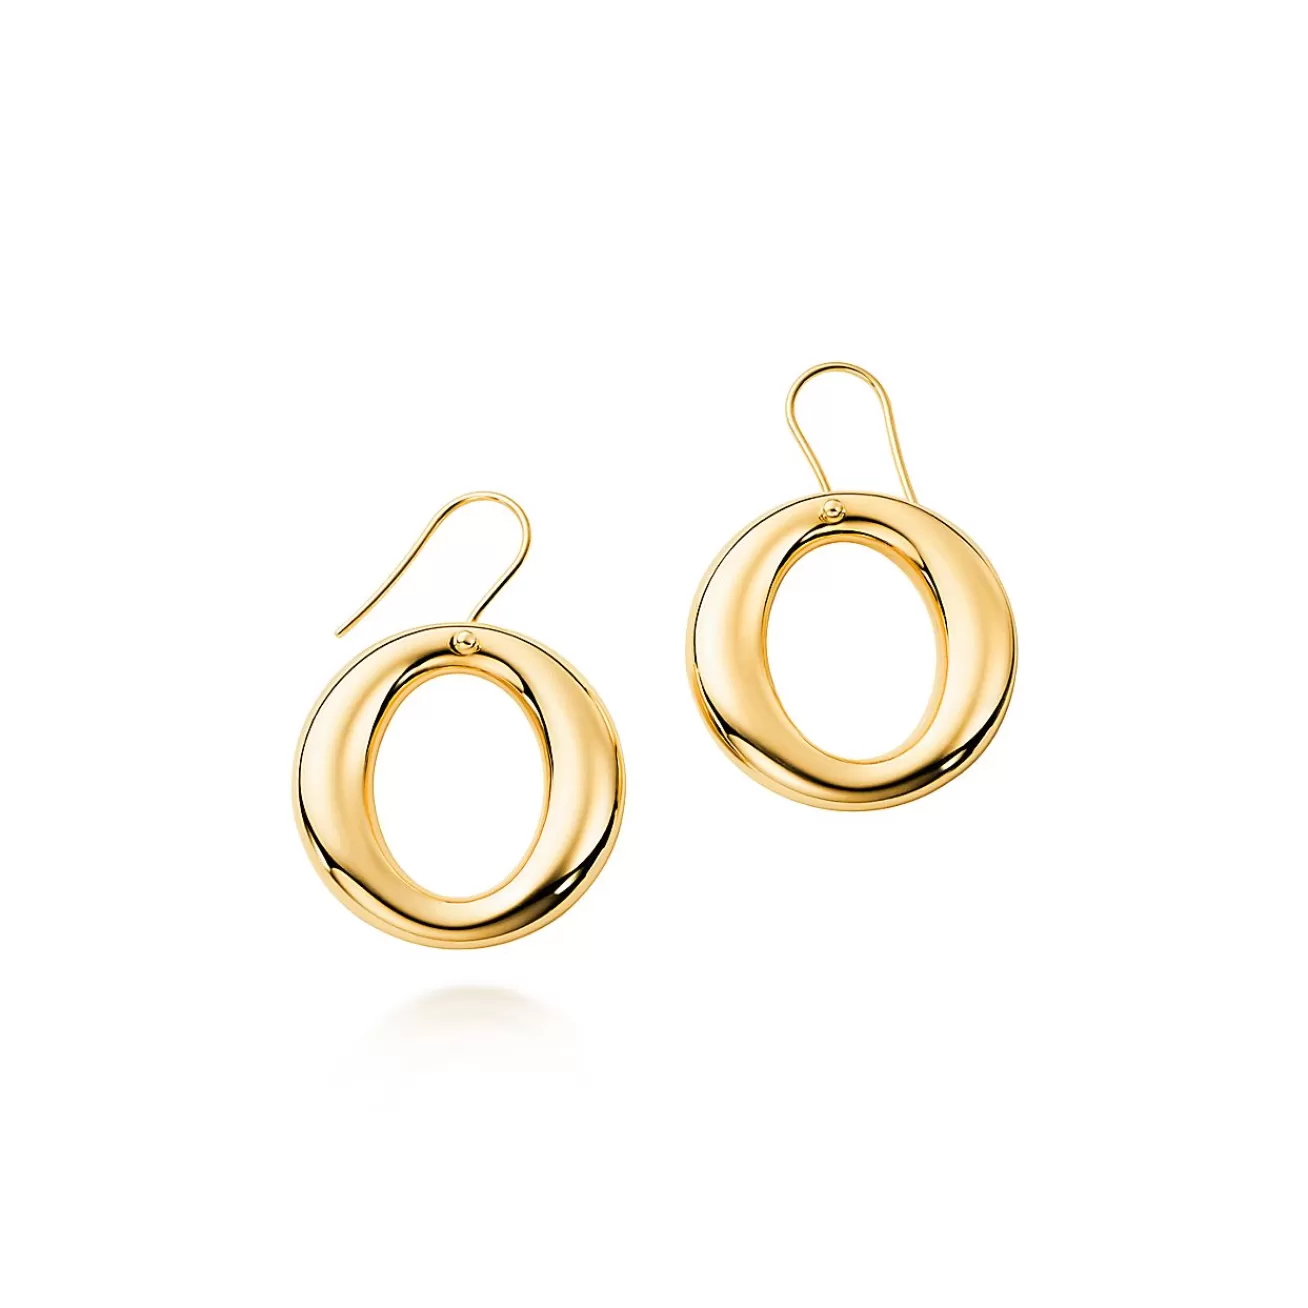 Tiffany & Co. Elsa Peretti® Sevillana™ earrings in 18k gold, small. | ^ Earrings | Gold Jewelry